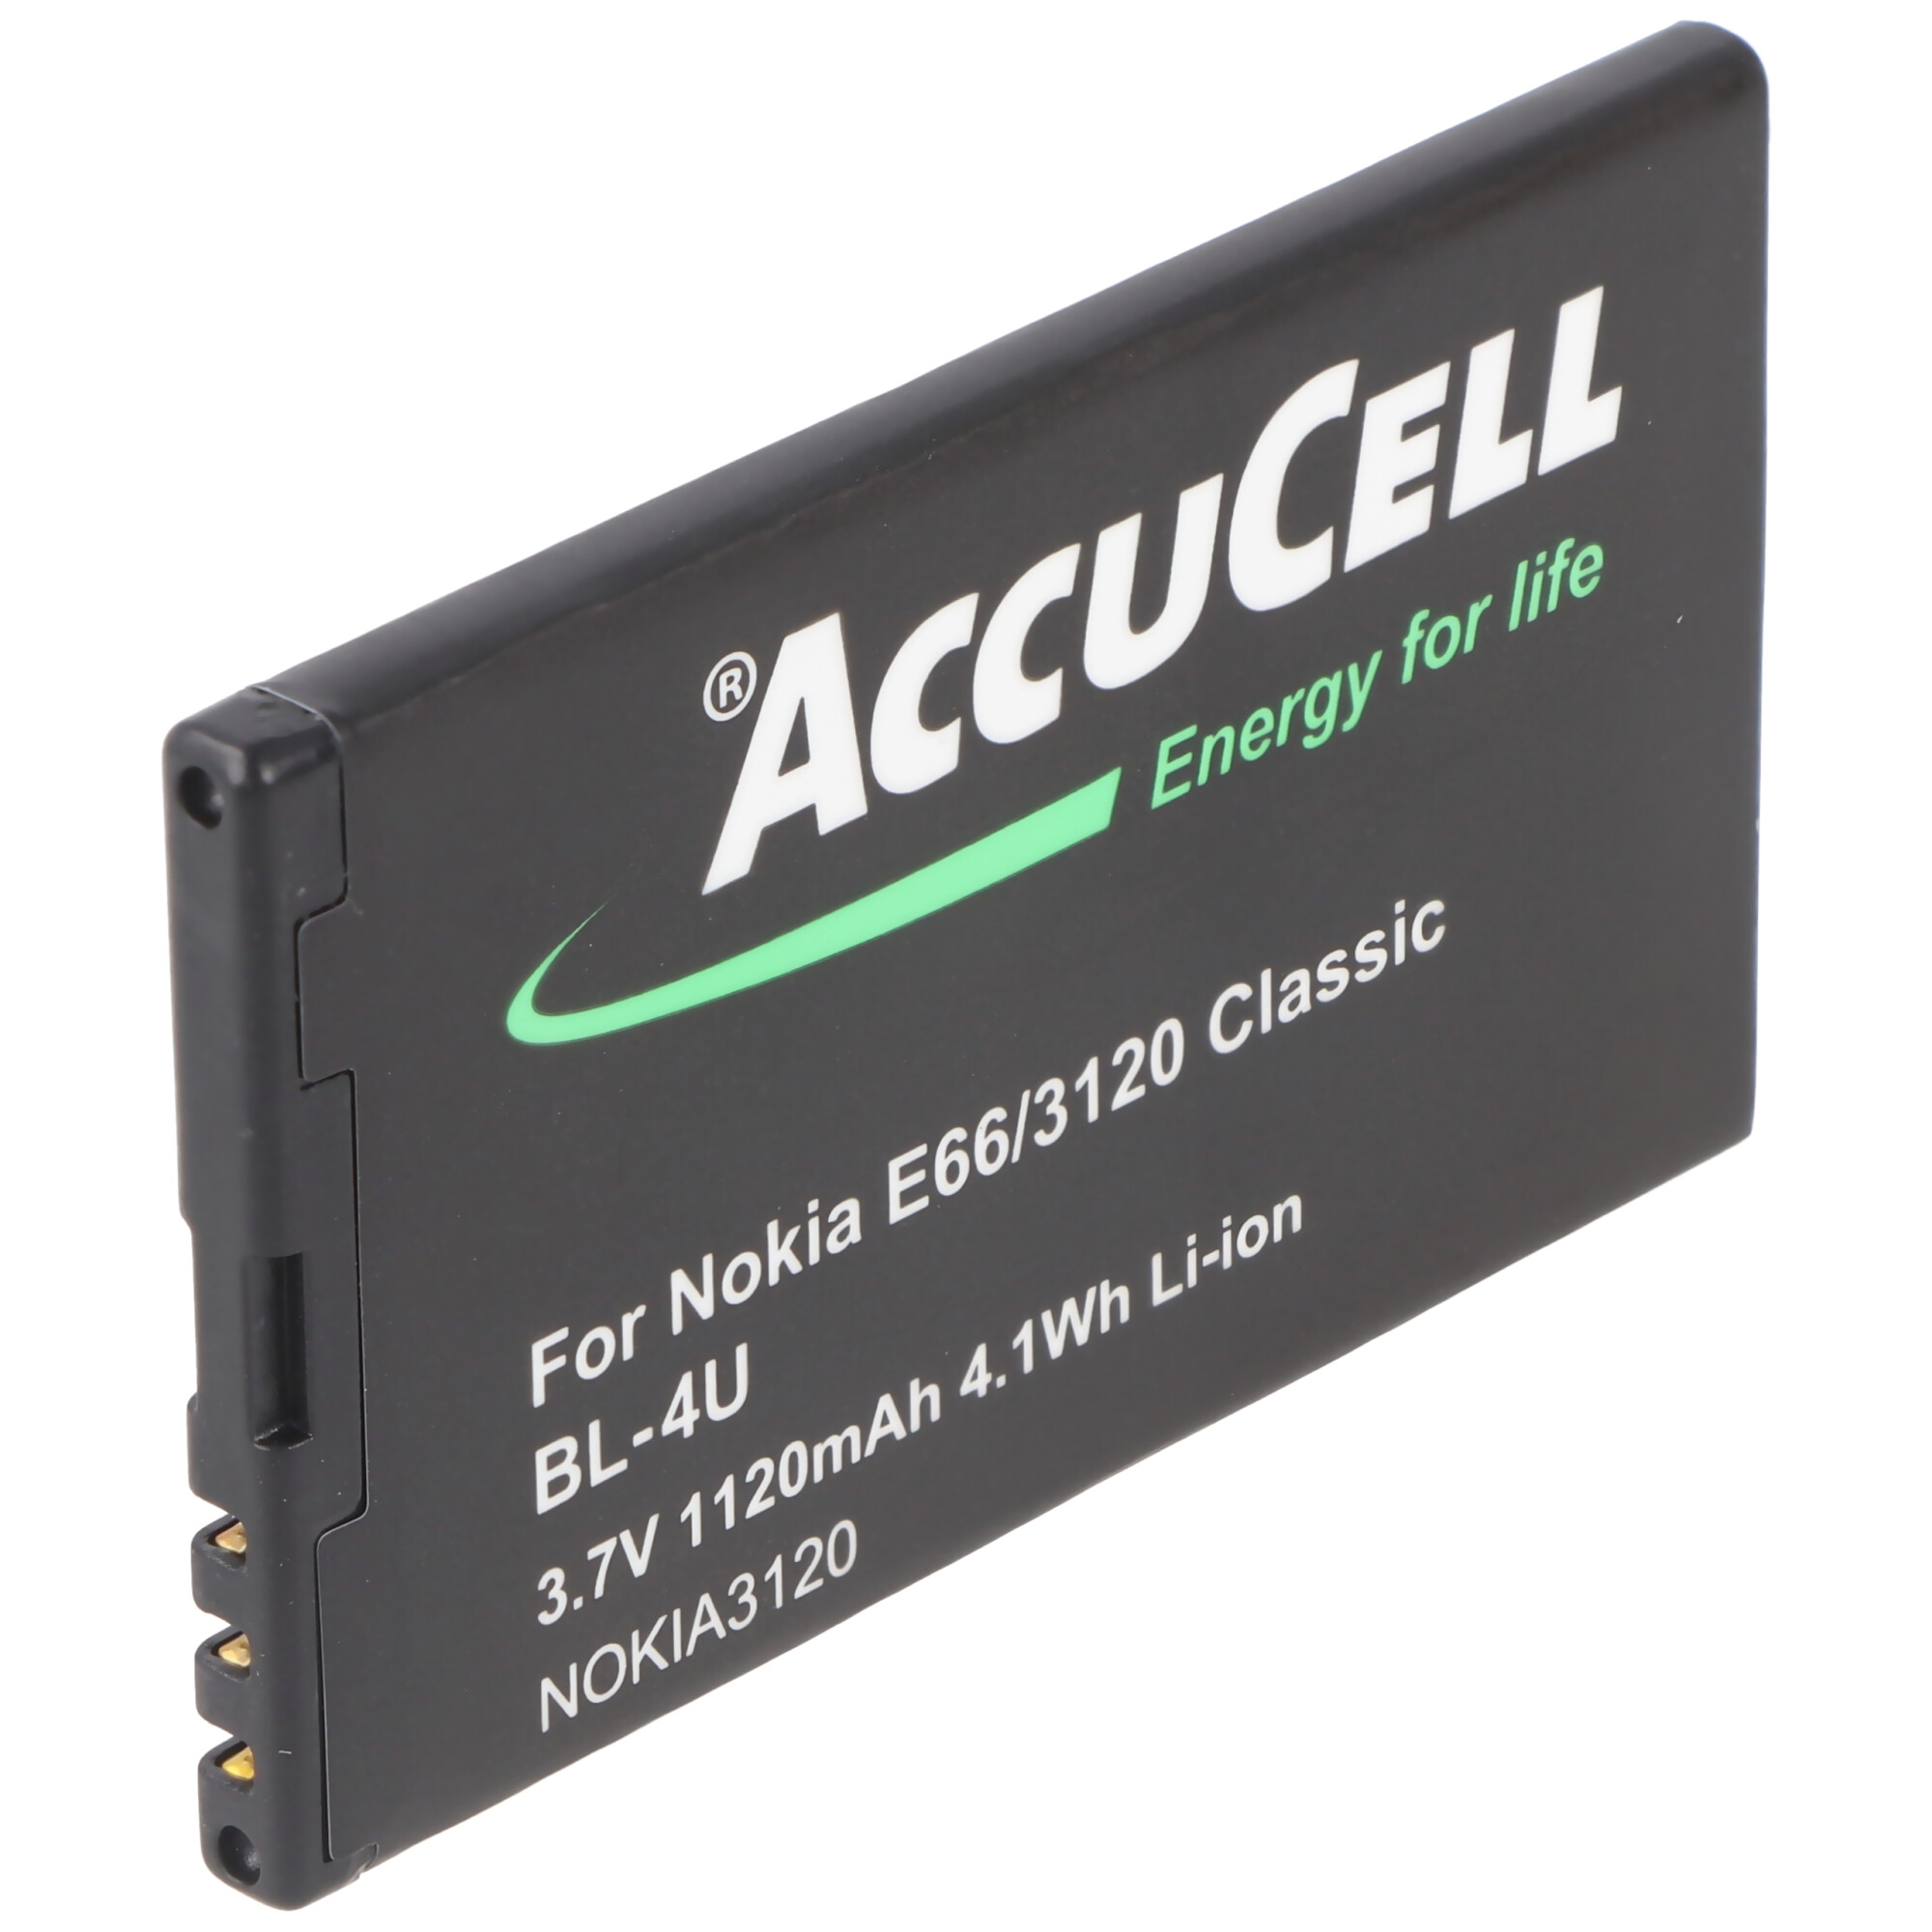 Handy-Akku, Lithium-Ionen für mAh Li-Ion 6600 Nokia - 1120 passend slide Akku ACCUCELL